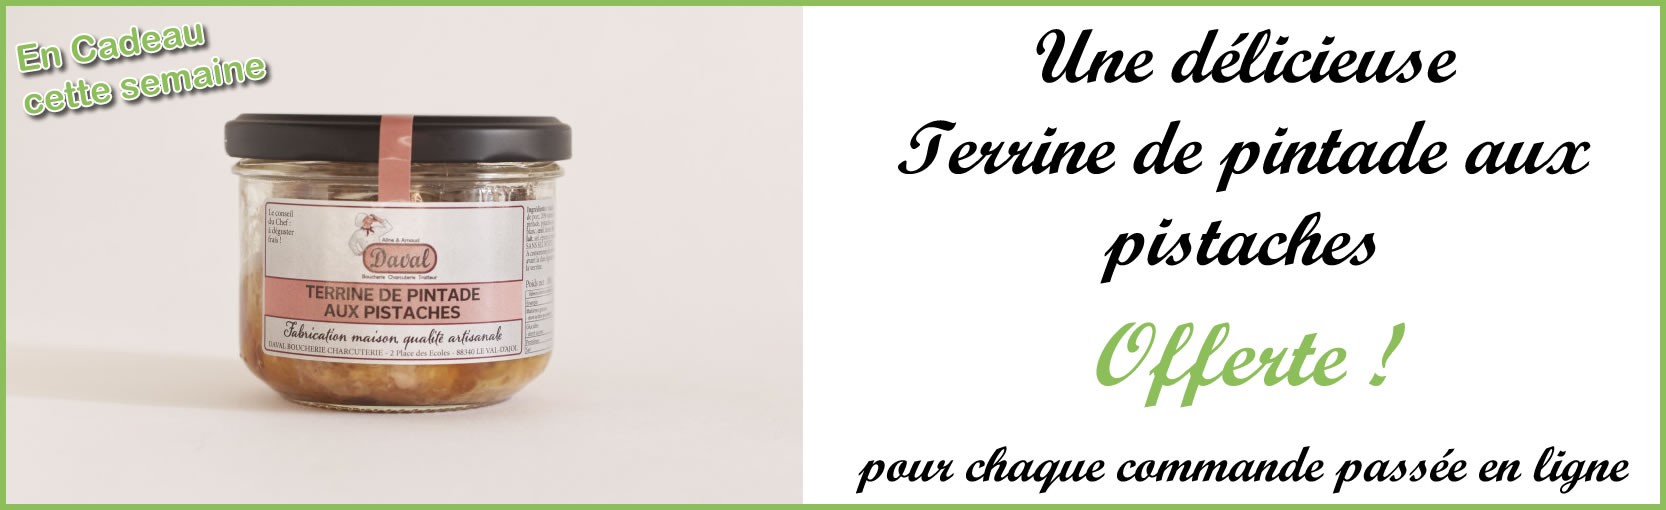 Boucherie Daval - Terrine de pintade aux pistaches